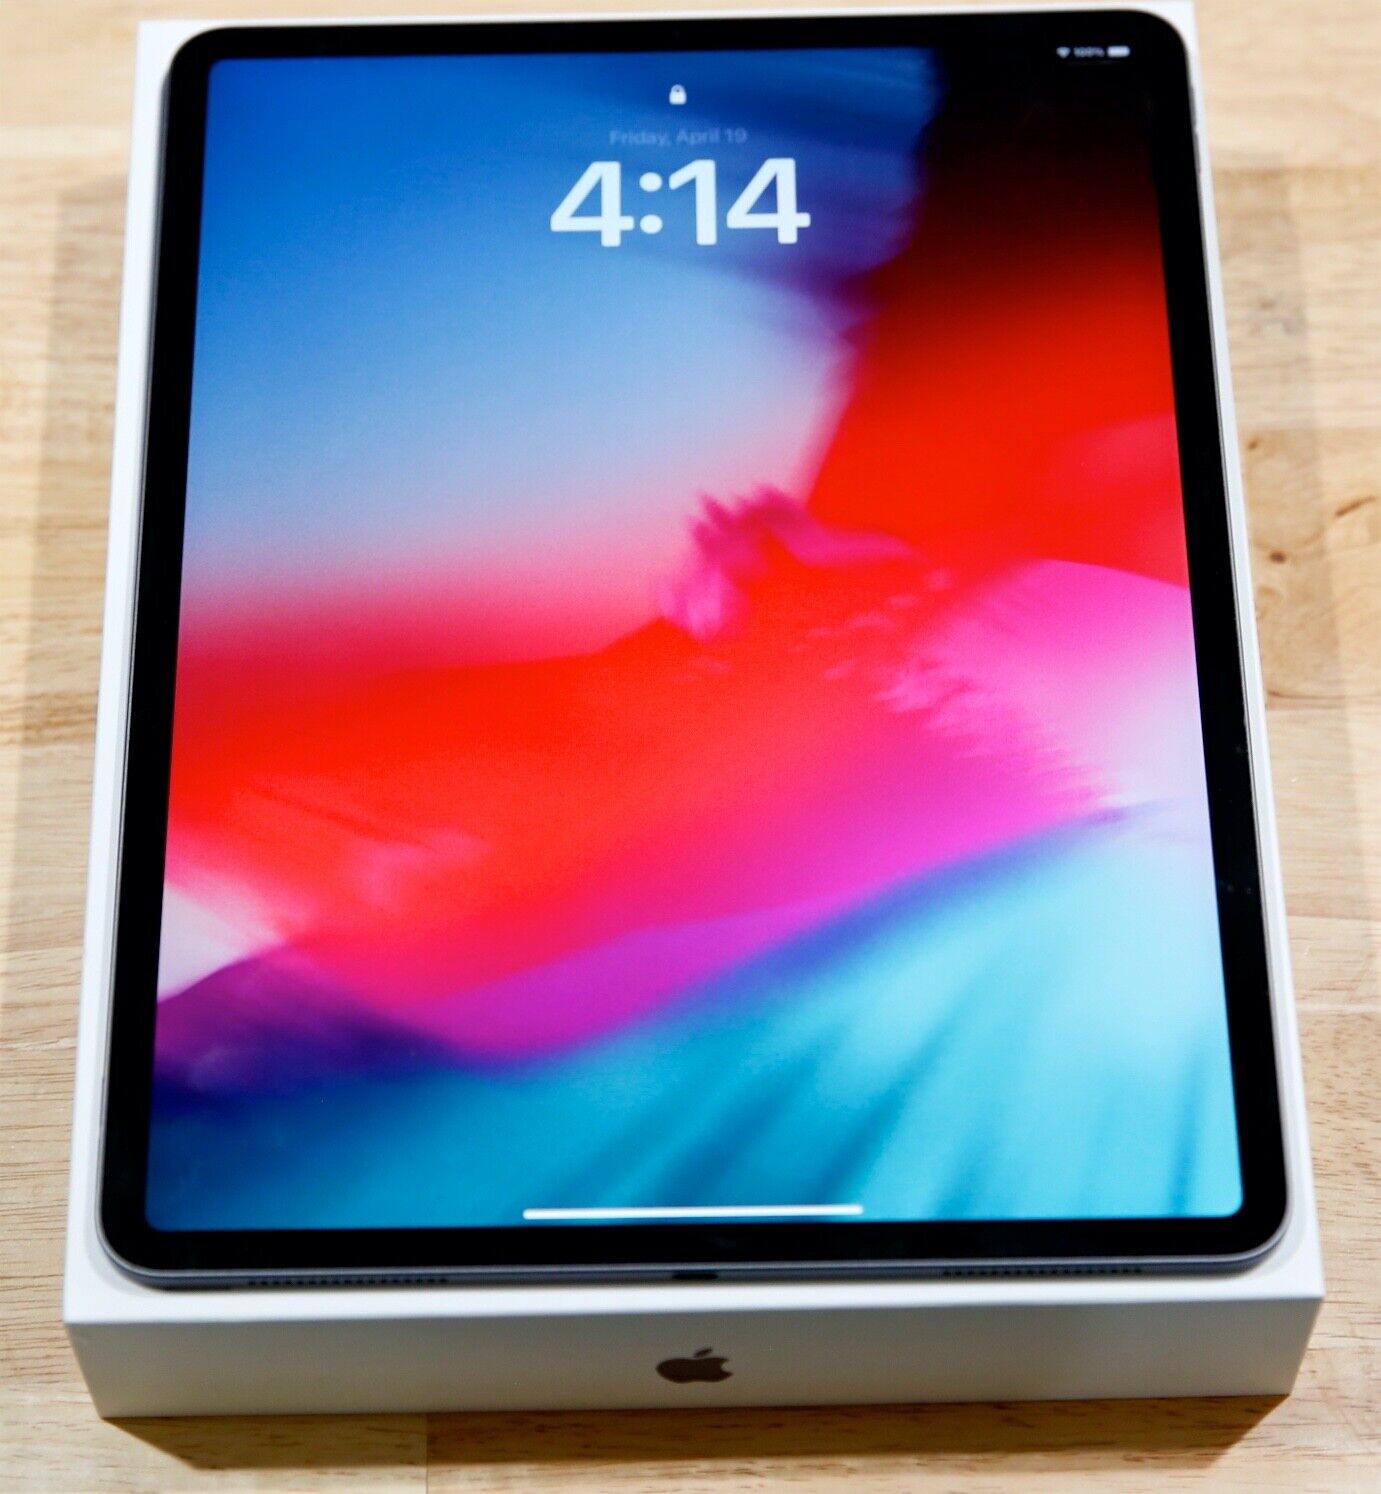 Apple iPad Pro 3rd Gen. 256GB, Wi-Fi, 12.9 in - Space Gray - Near Mint